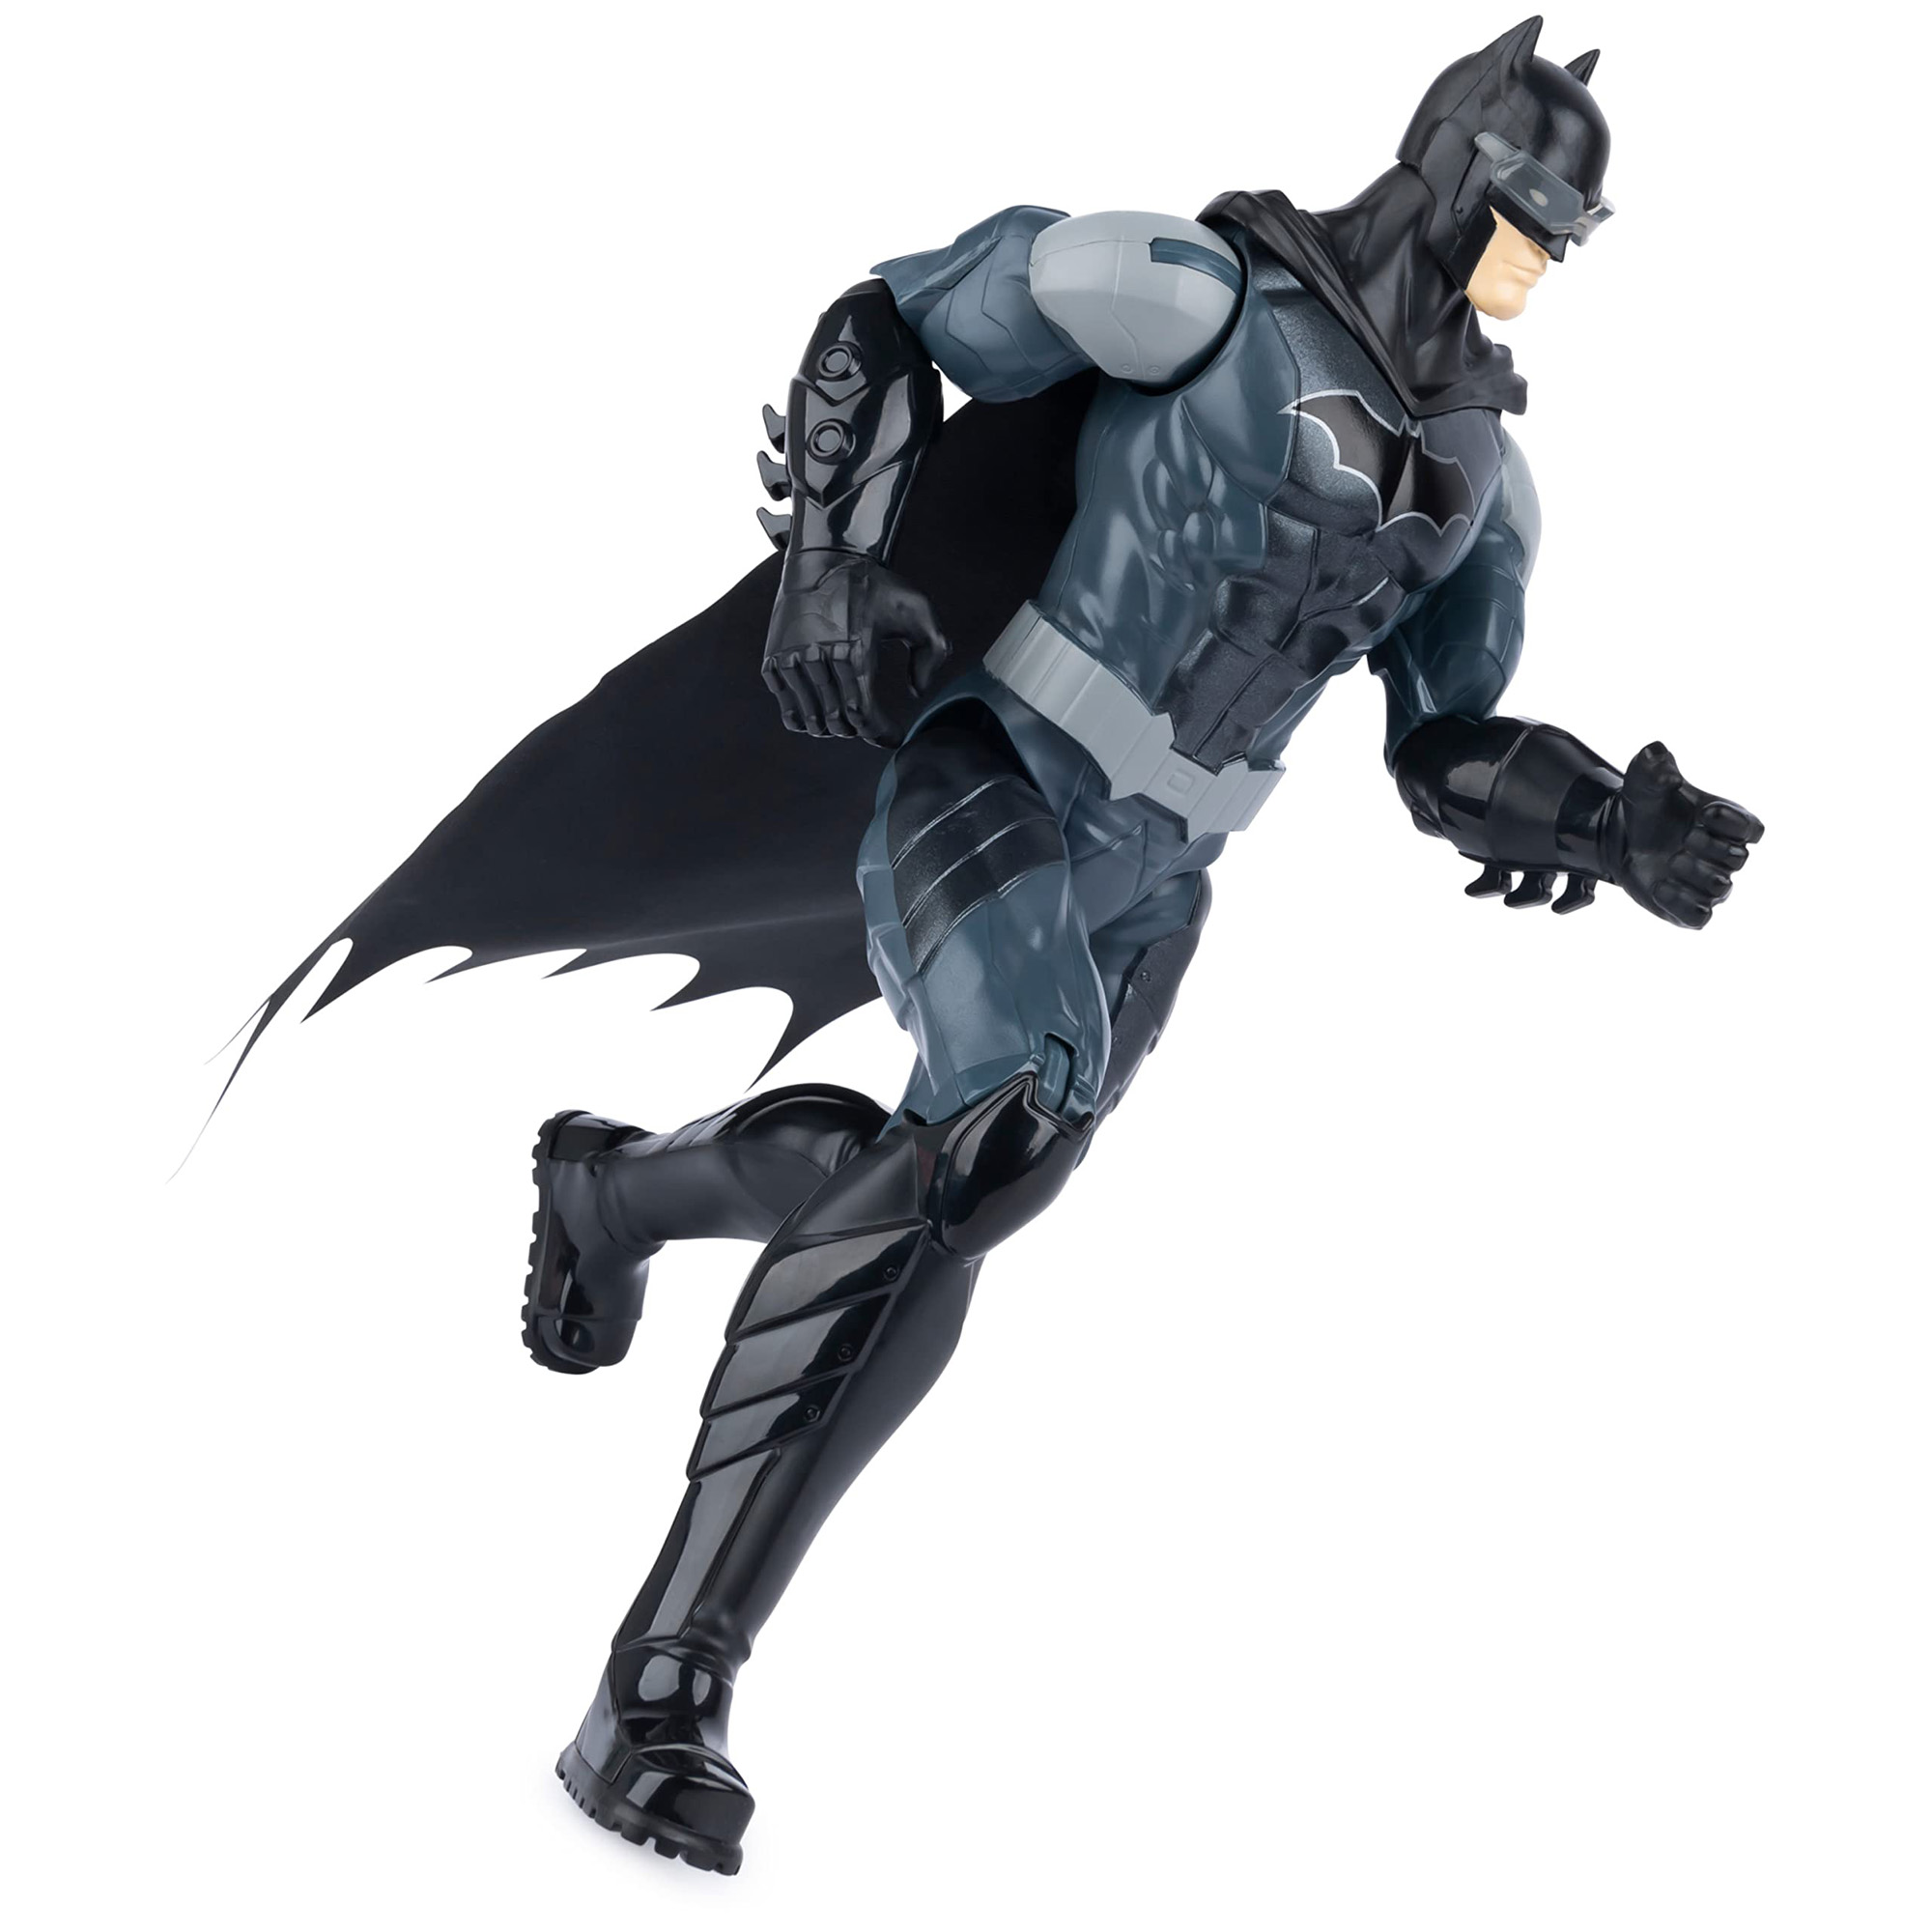 Batman Action Figure 30cm con armatura Combact blu, mantello, occhiali Night Vision e 11 punti di articolazione - DC Comics